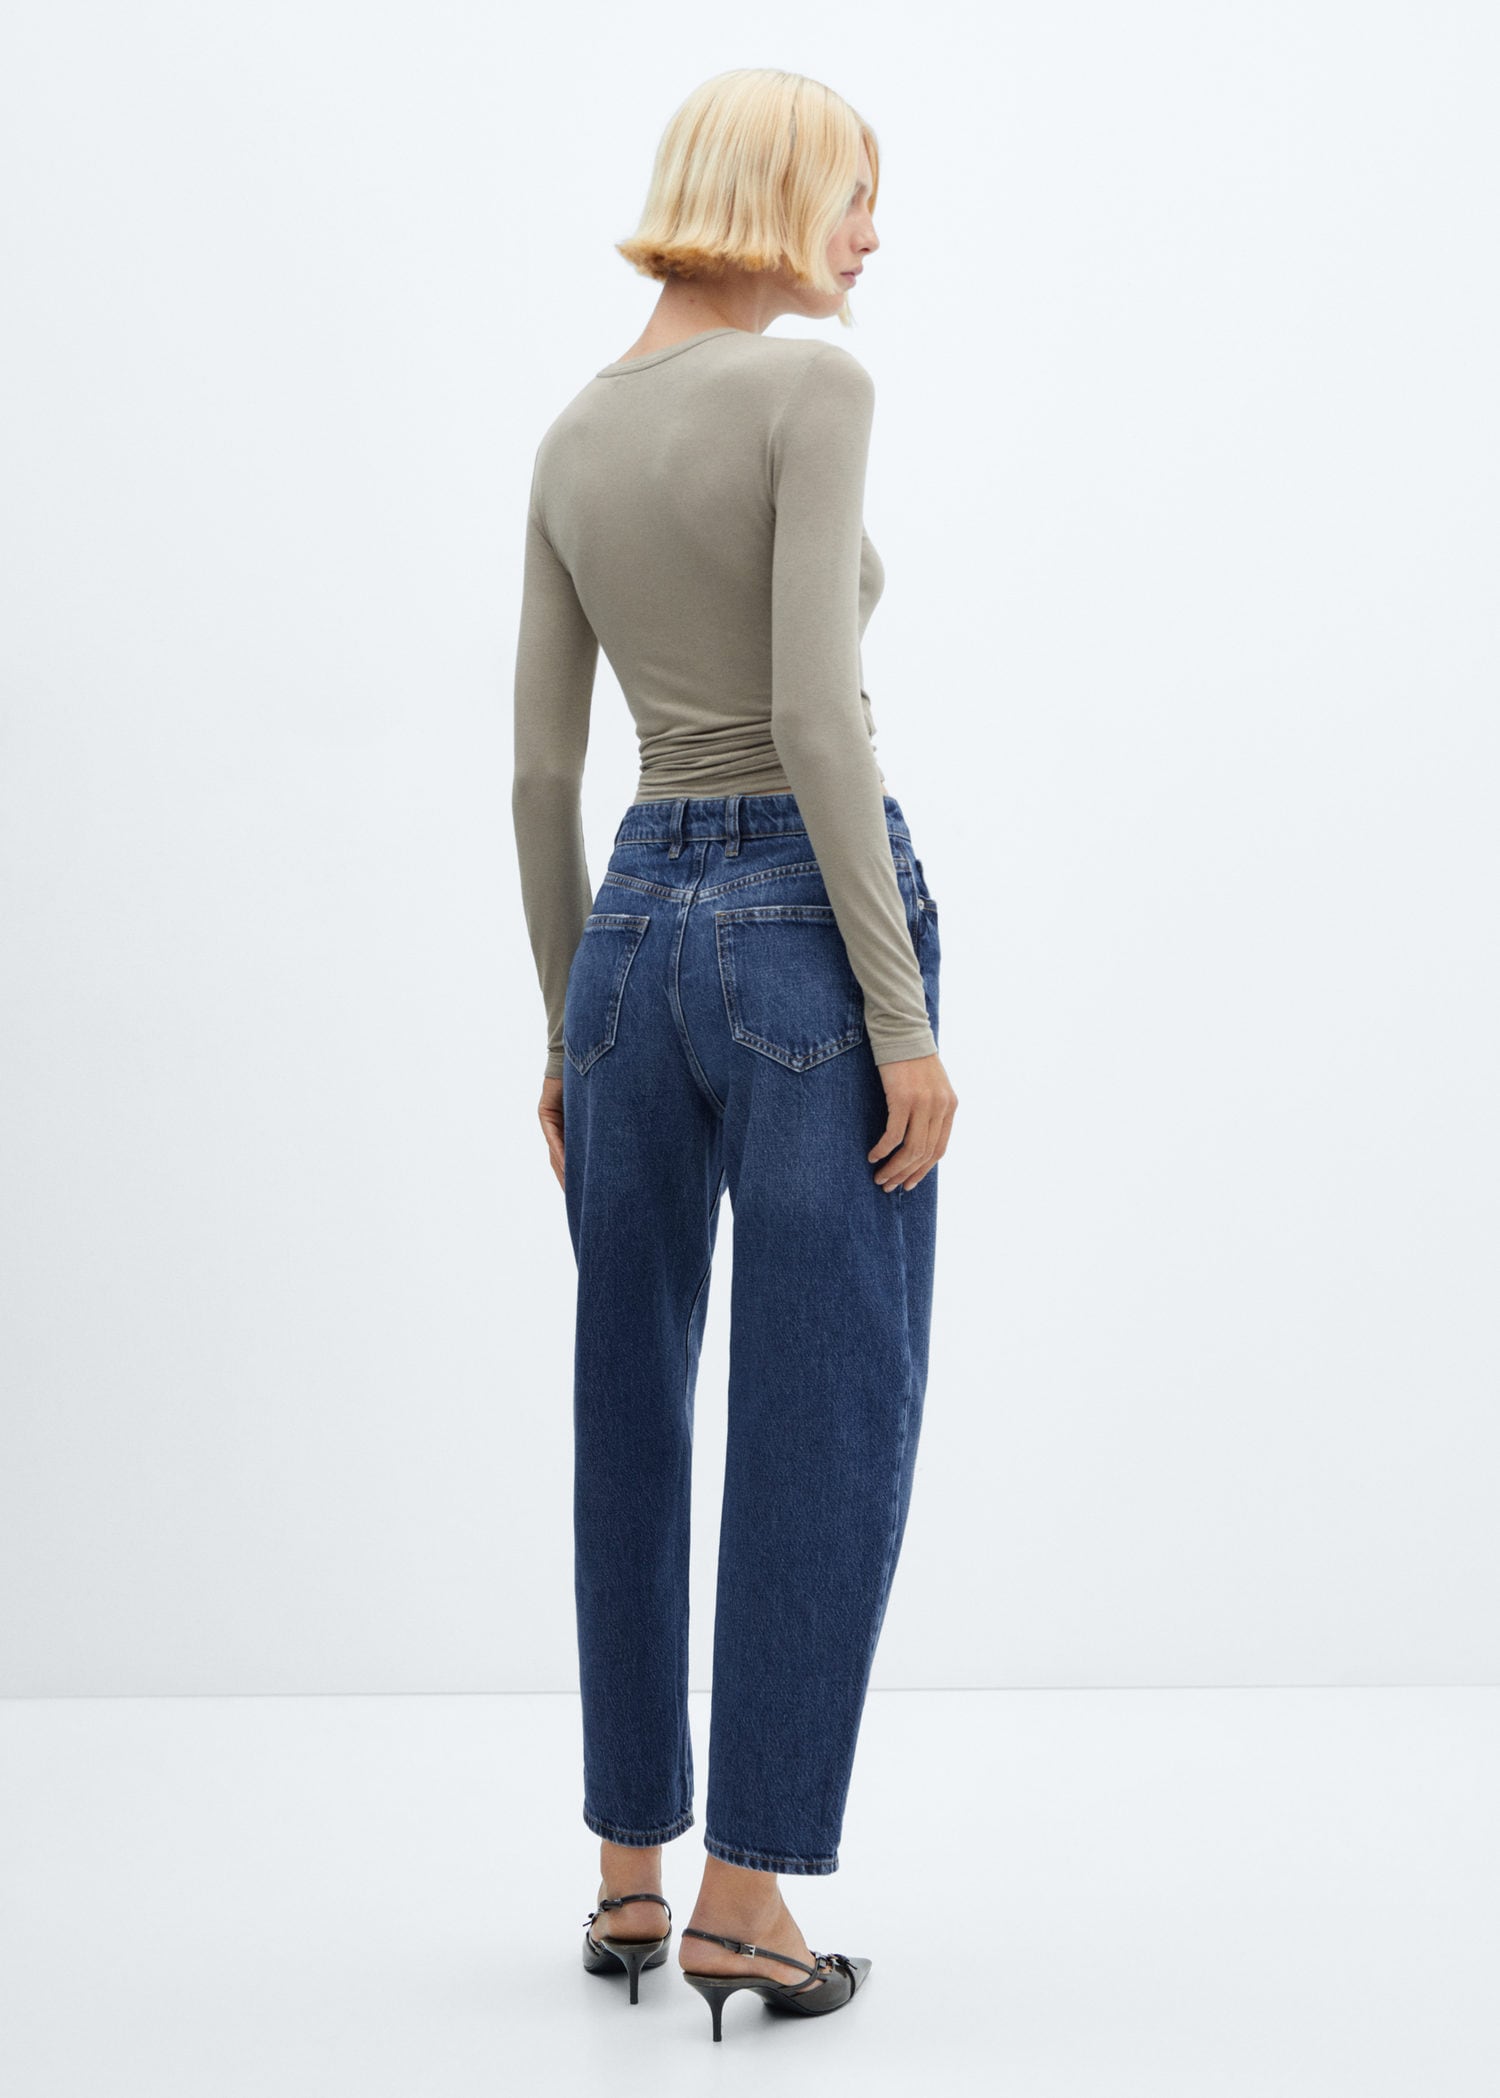 High-waist slouchy jeans